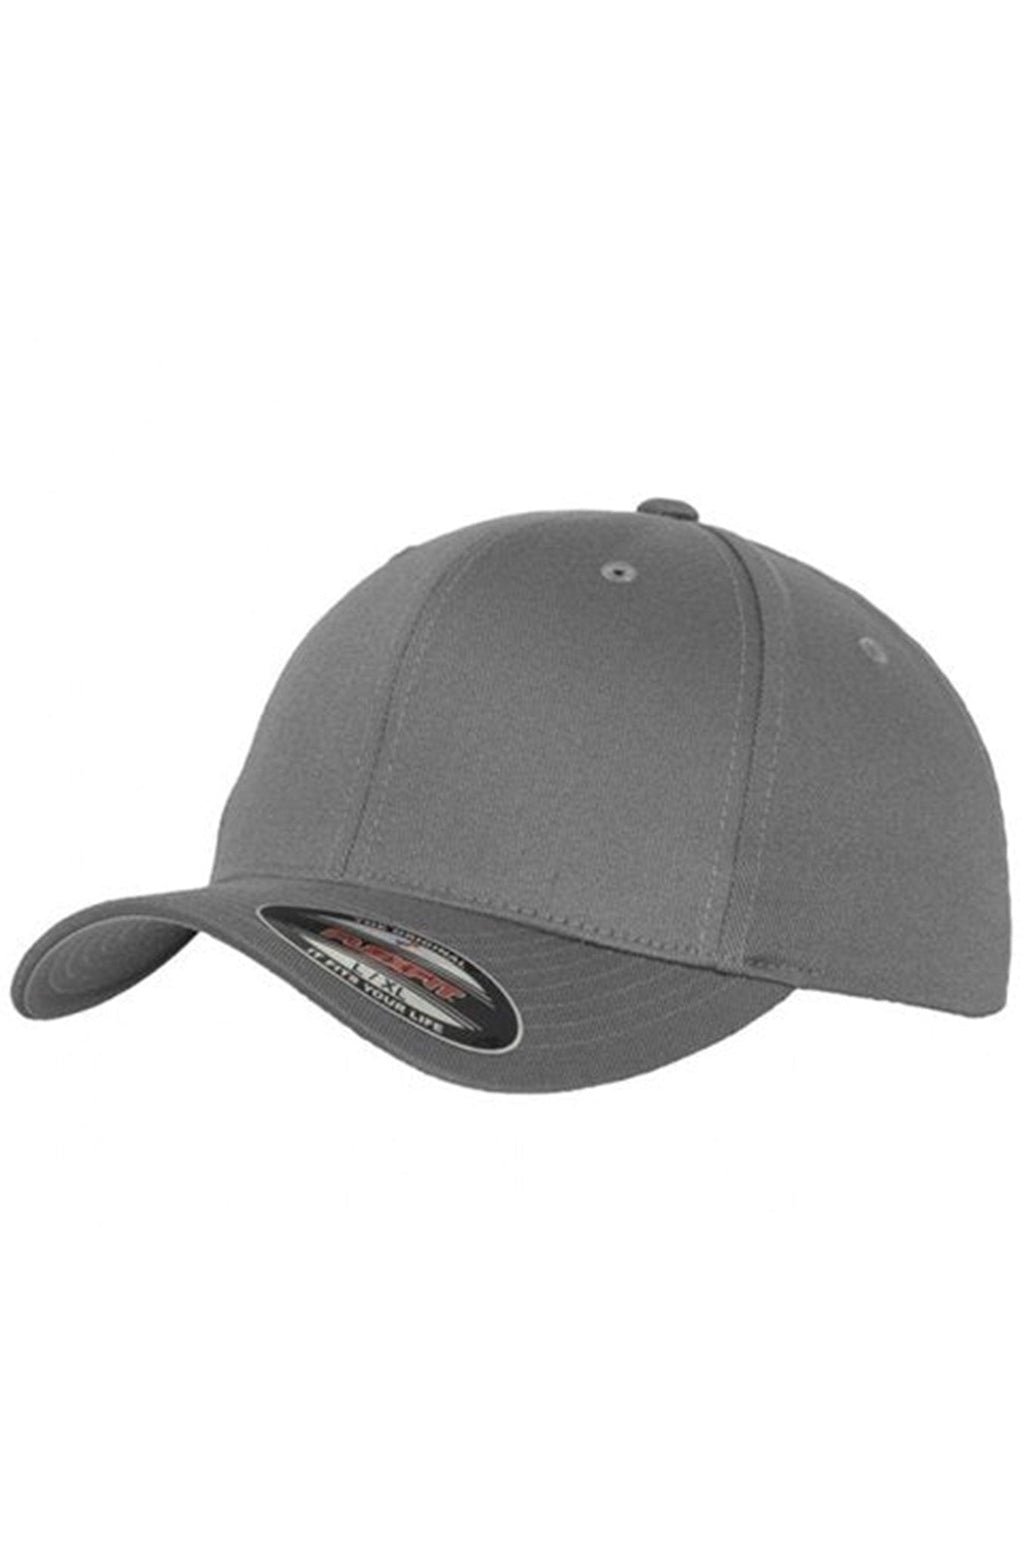 Originálna baseballová čiapka FlexFit - svetlo šedá